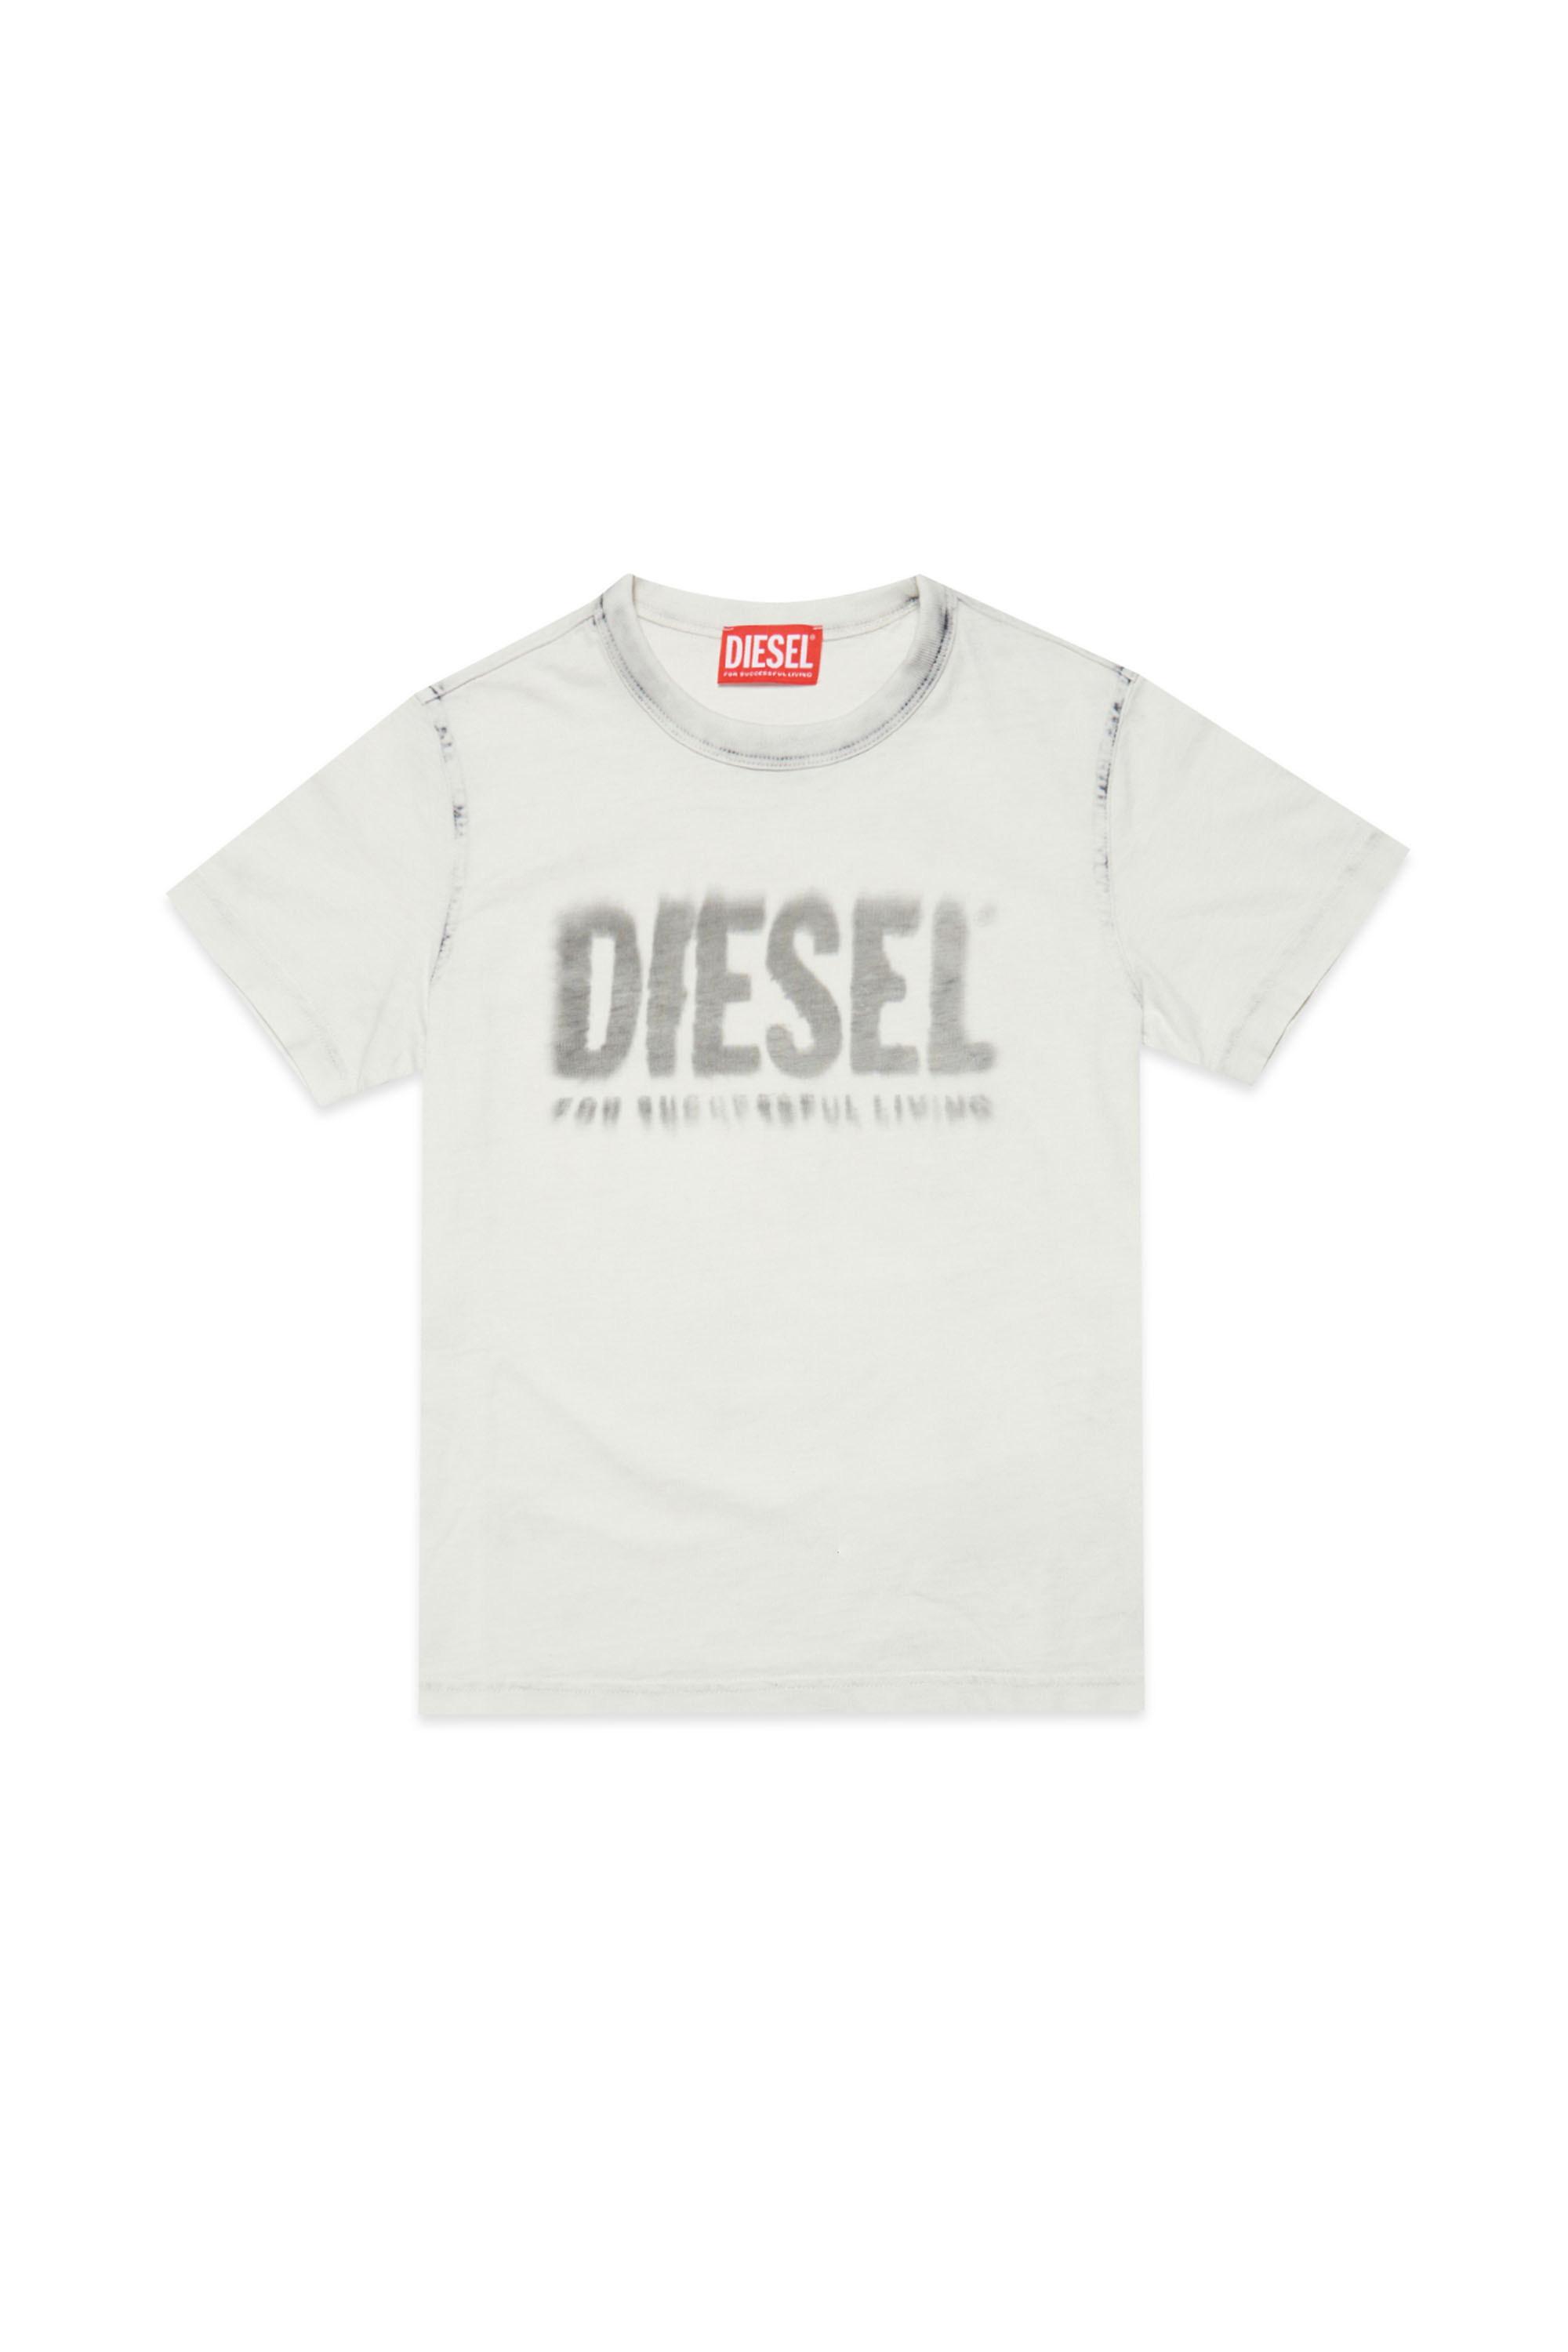 Diesel - TDIEGORE6, Blanc/Gris - Image 1